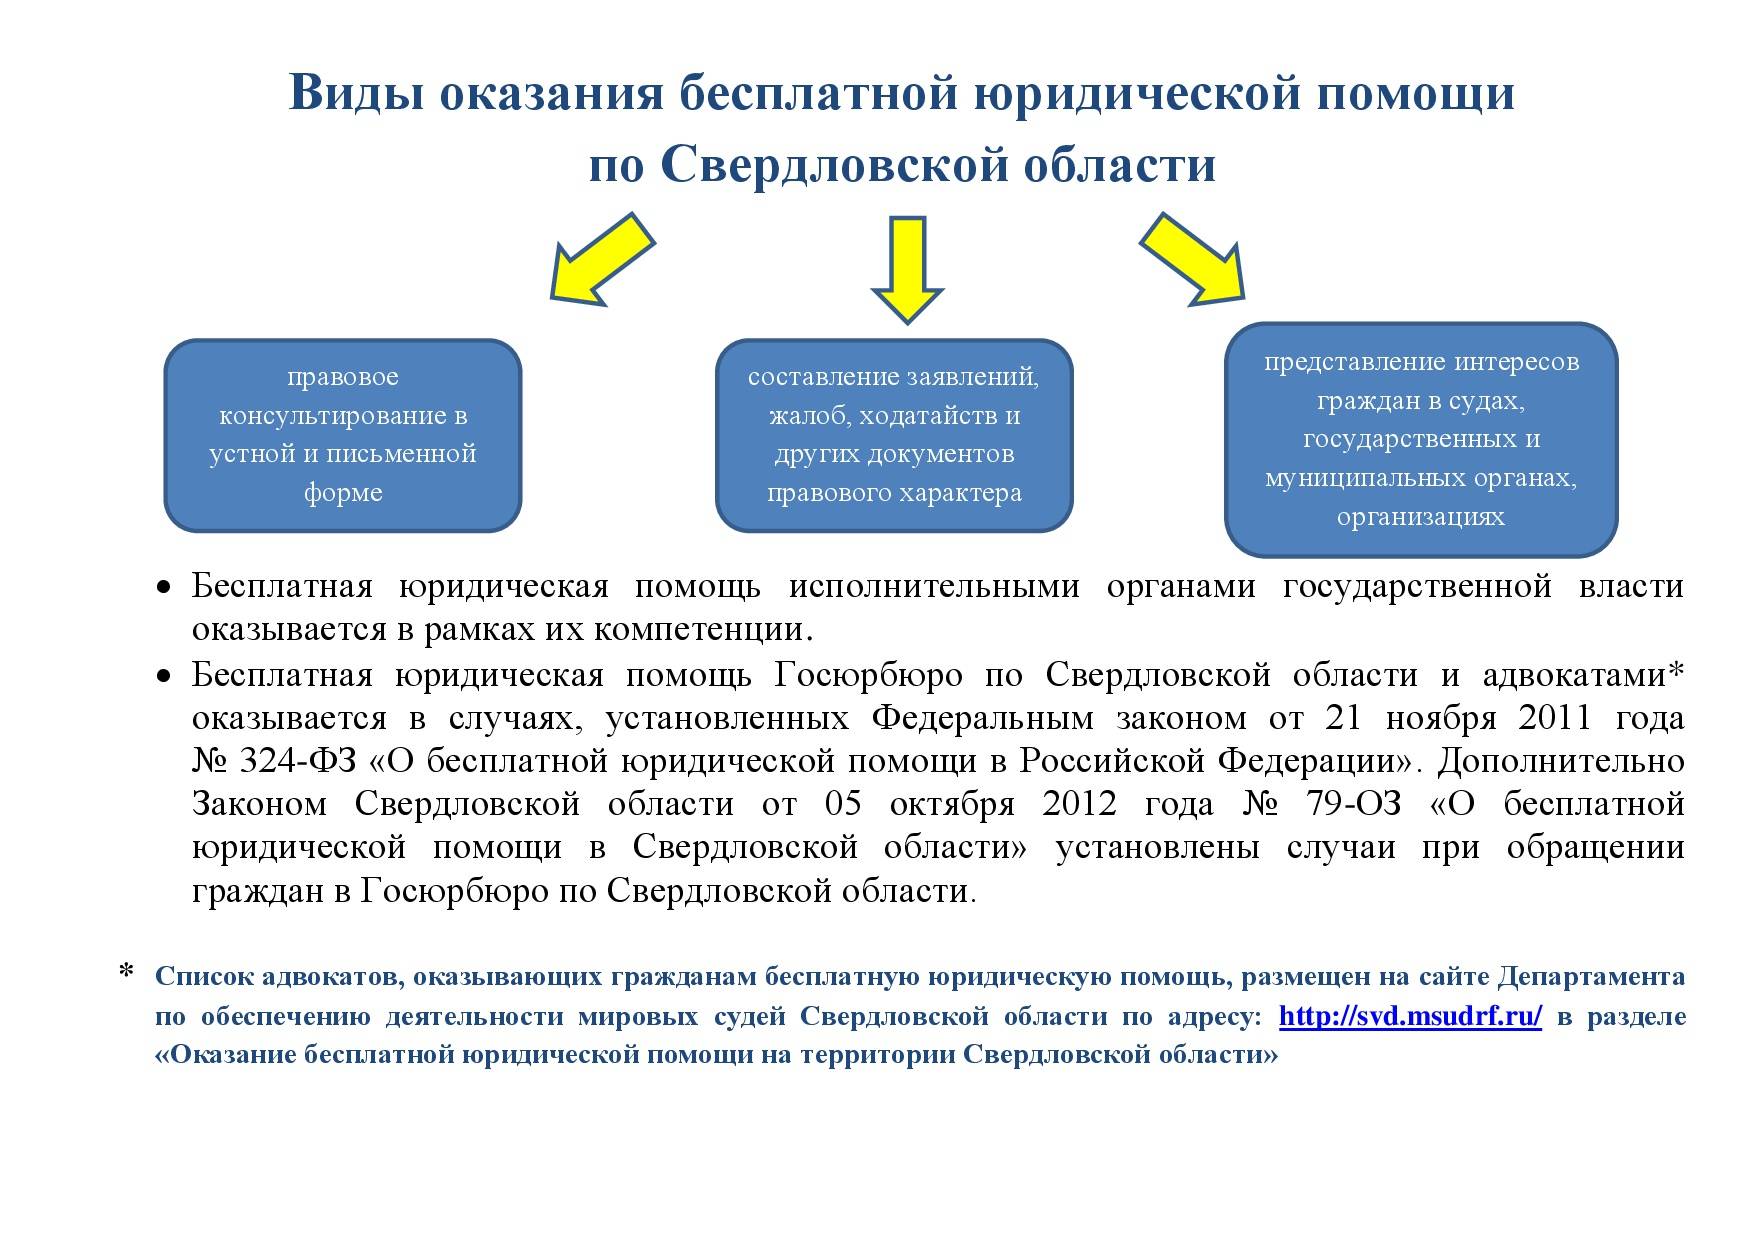 Как получить бесплатную юридическую помощь | вопрос-ответ по юридической теме - юристы в сети lawyersfree.ru